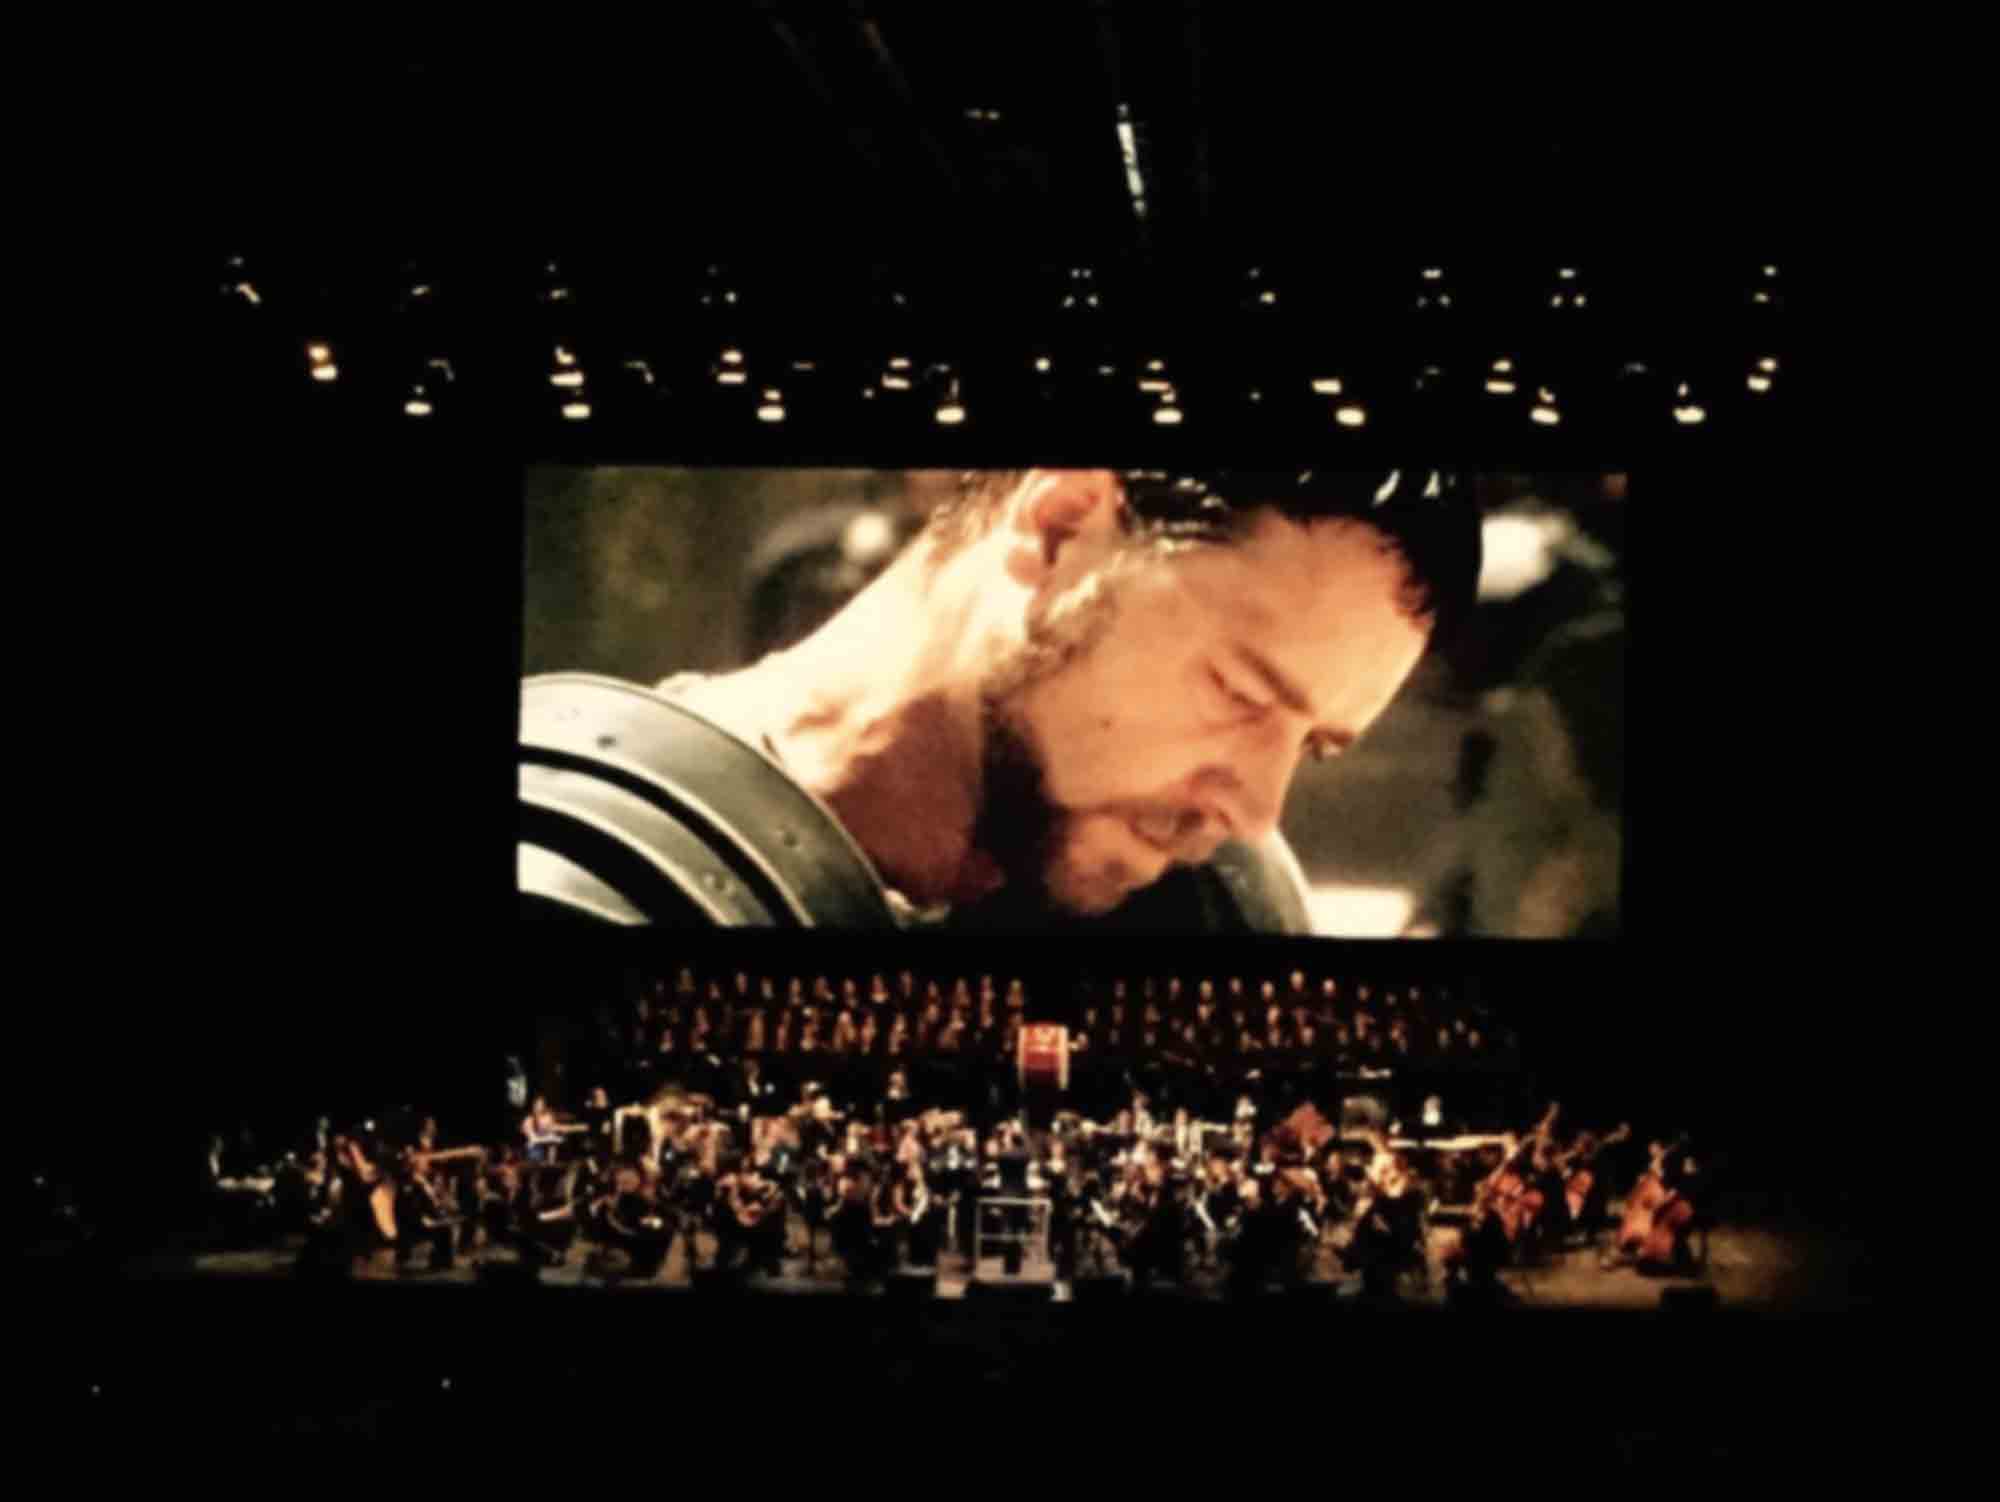 Le Chœur du KCB interprète la bande originale du film ‘Gladiateur’ (2000) en ciné-concert à l’Expo de Bruxelles, Palais 12, décembre 2014.